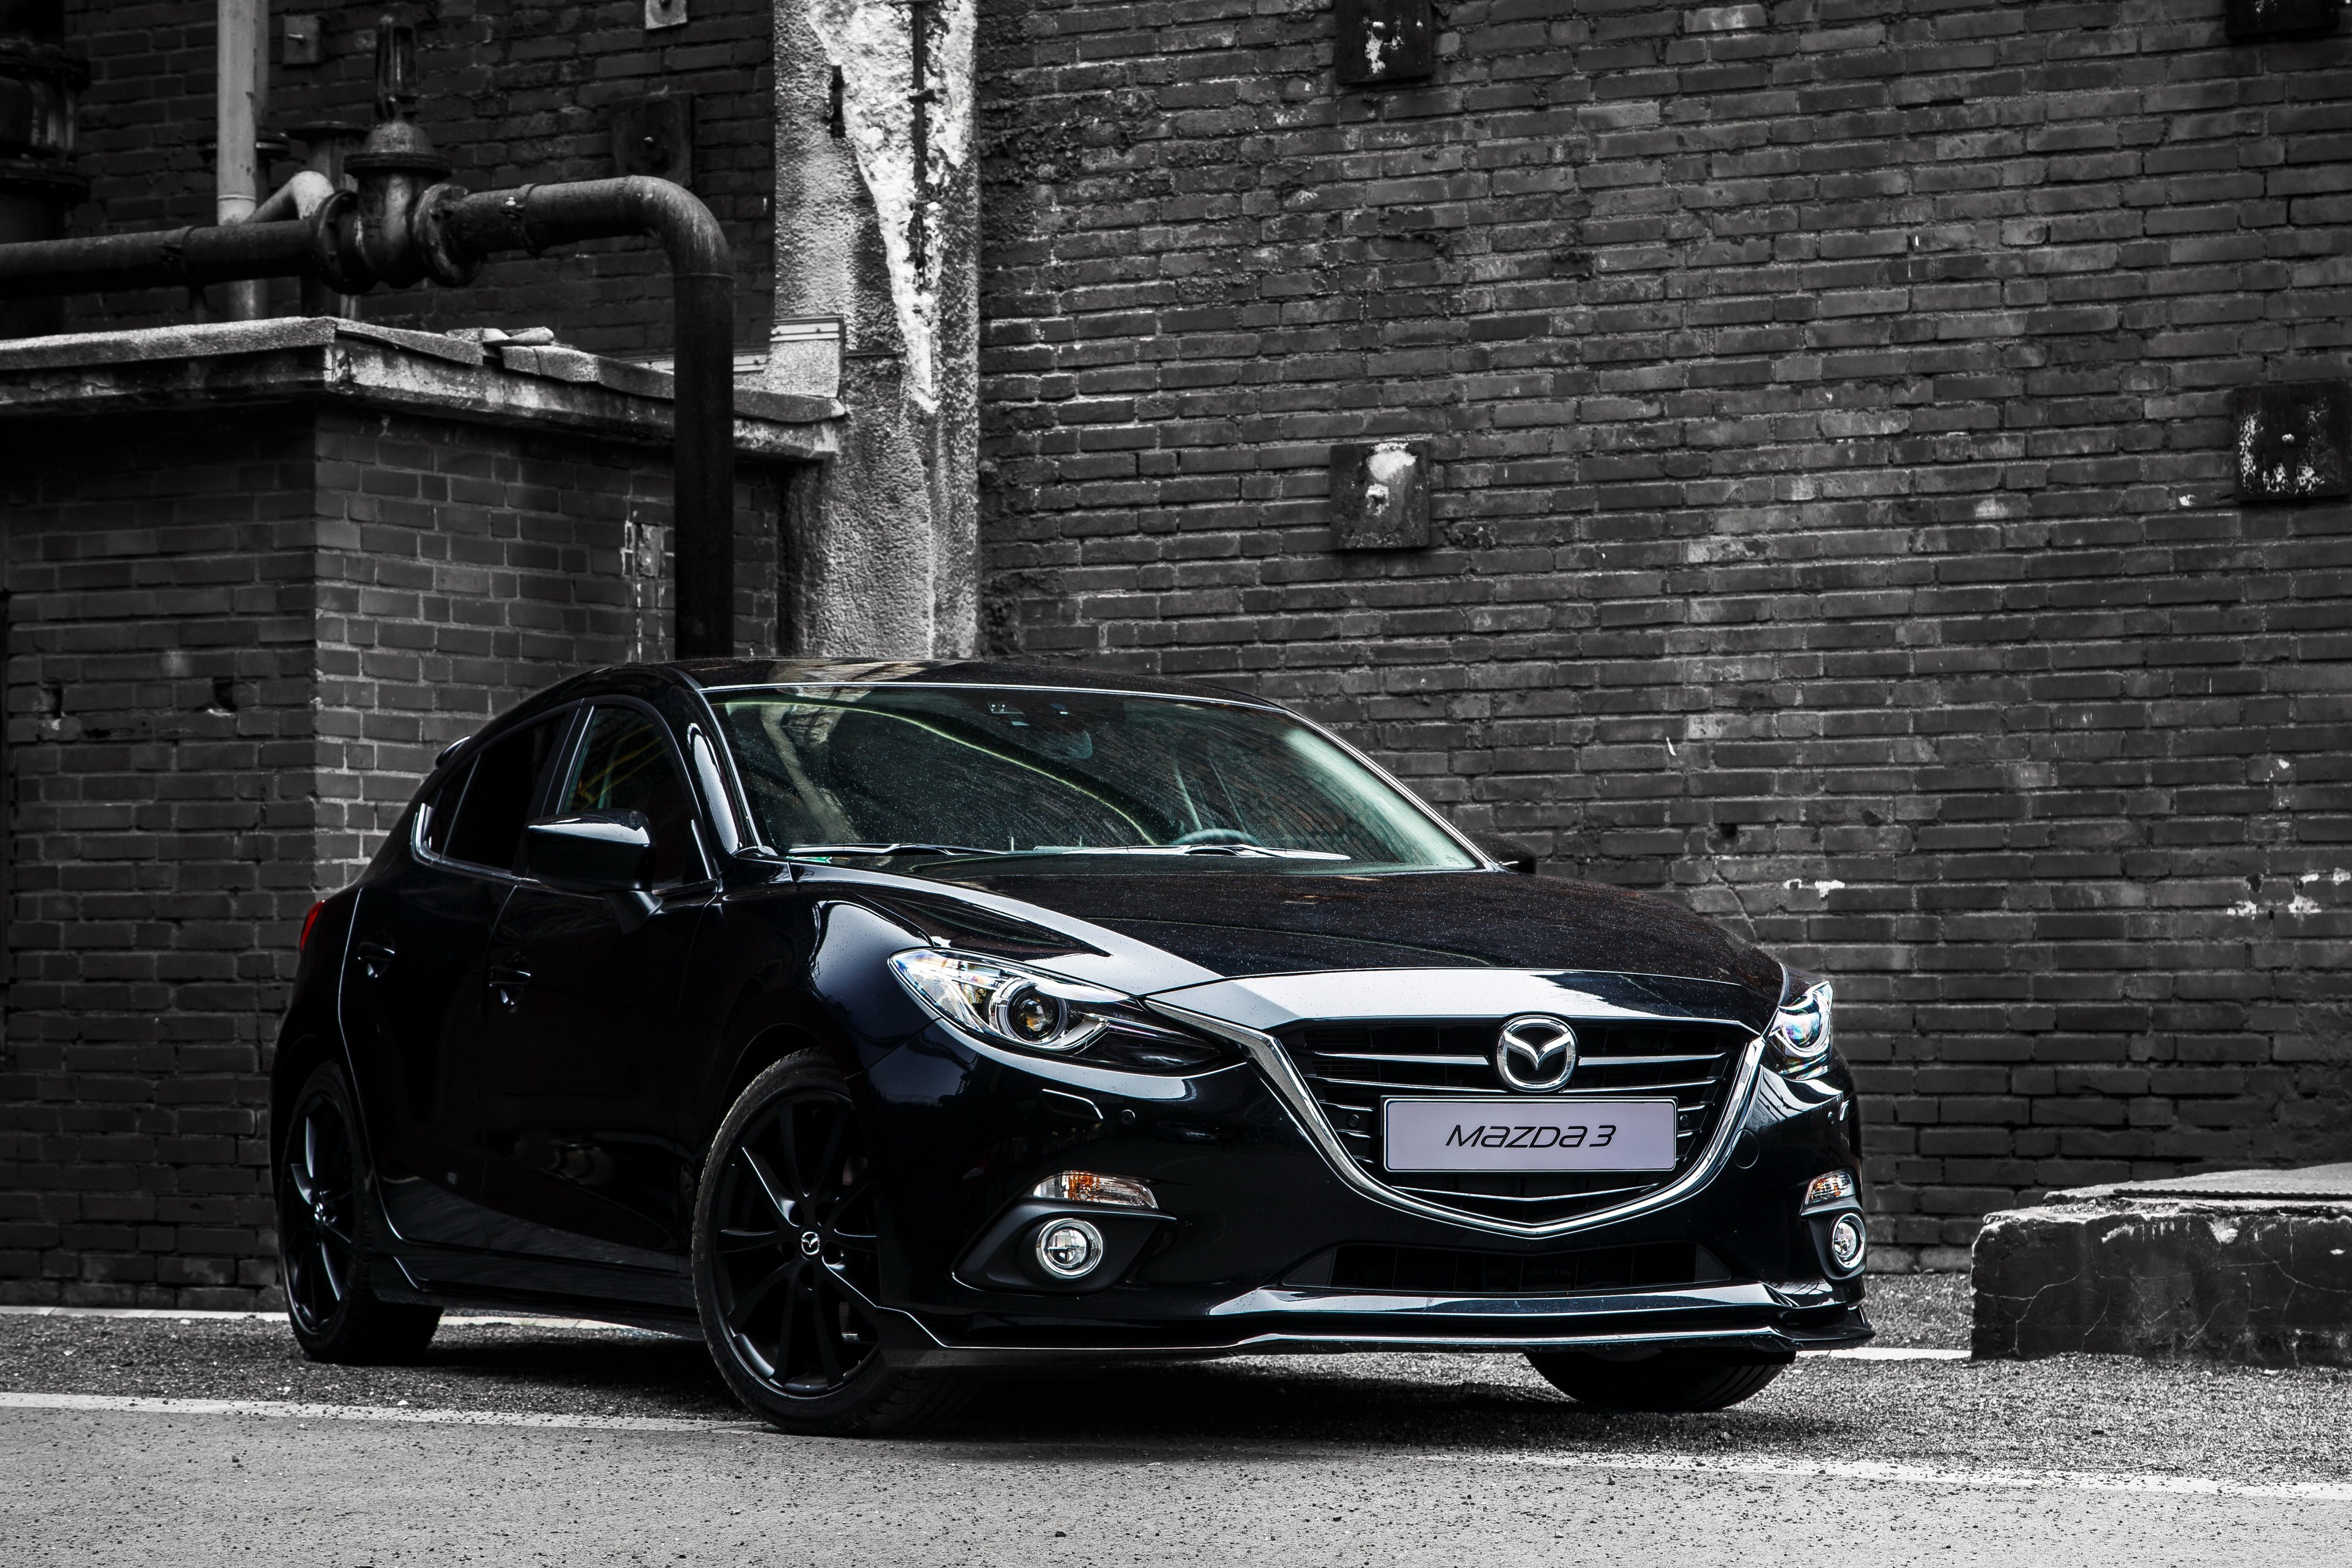 2015, Mazda3, Black, Limited, B m, Mazda Wallpaper